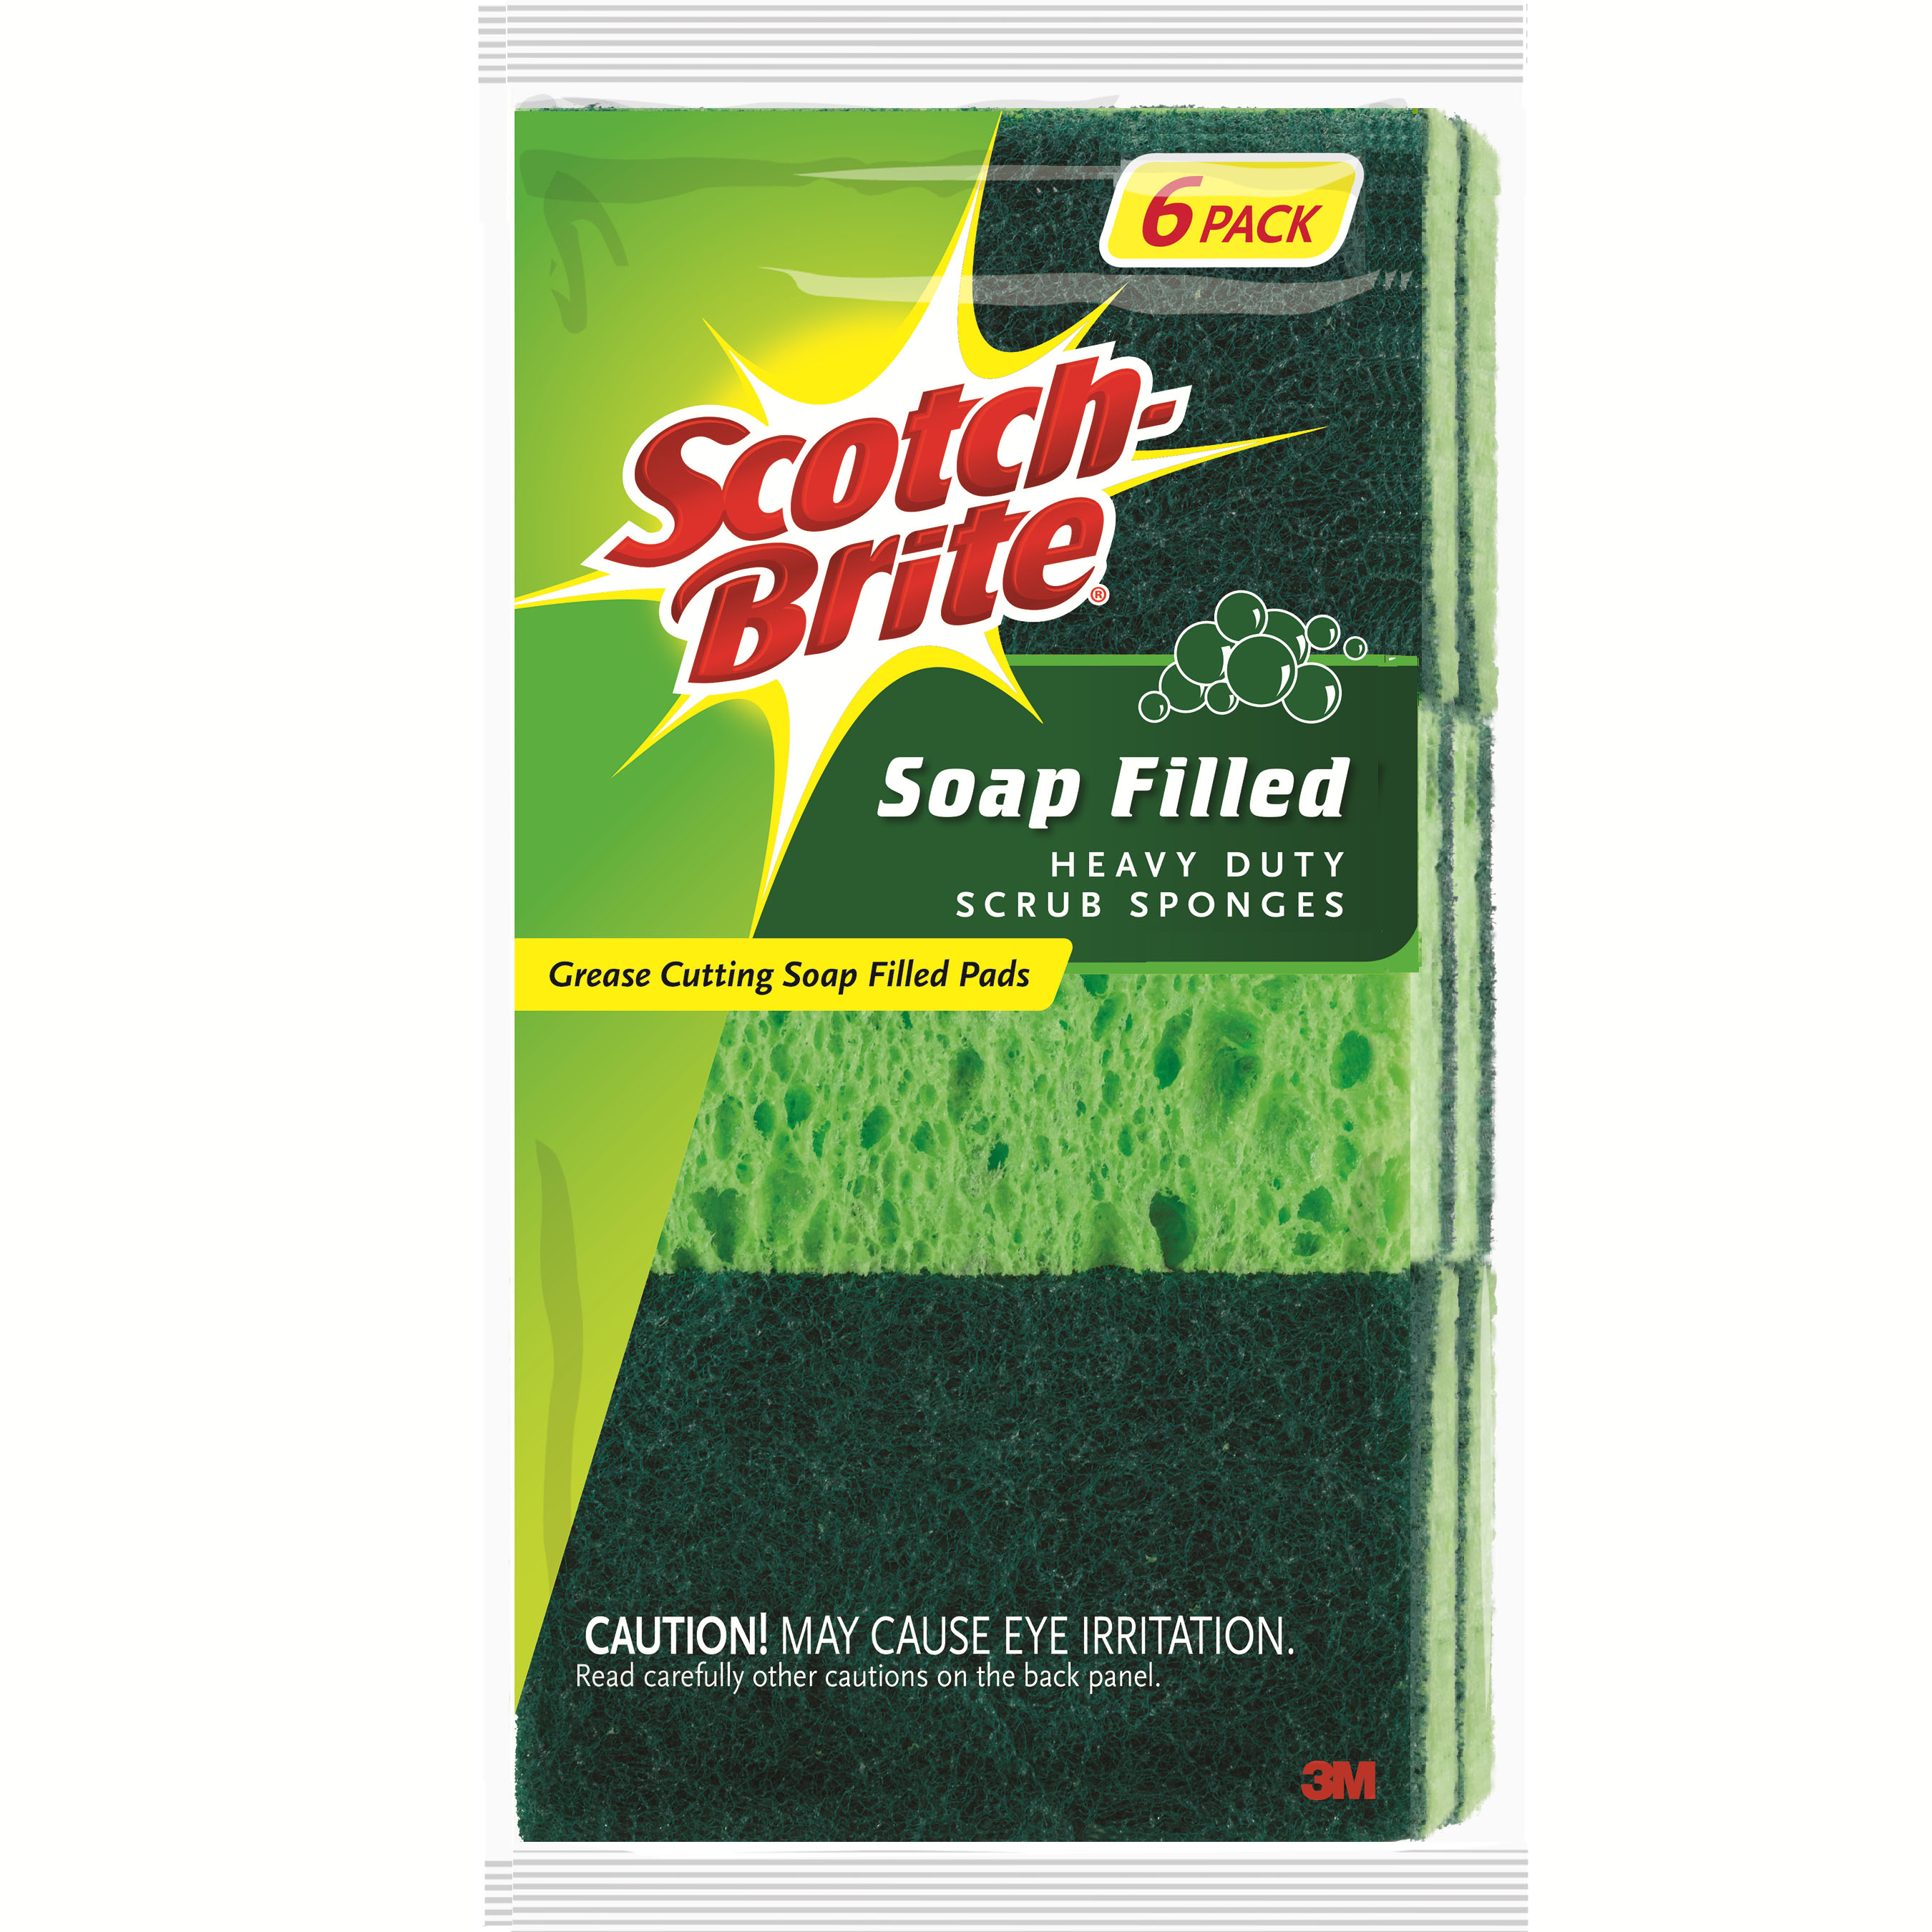 3M Scotch Brite Soap Filled Heavy Duty Scrub Sponges 300-V 24 Pack